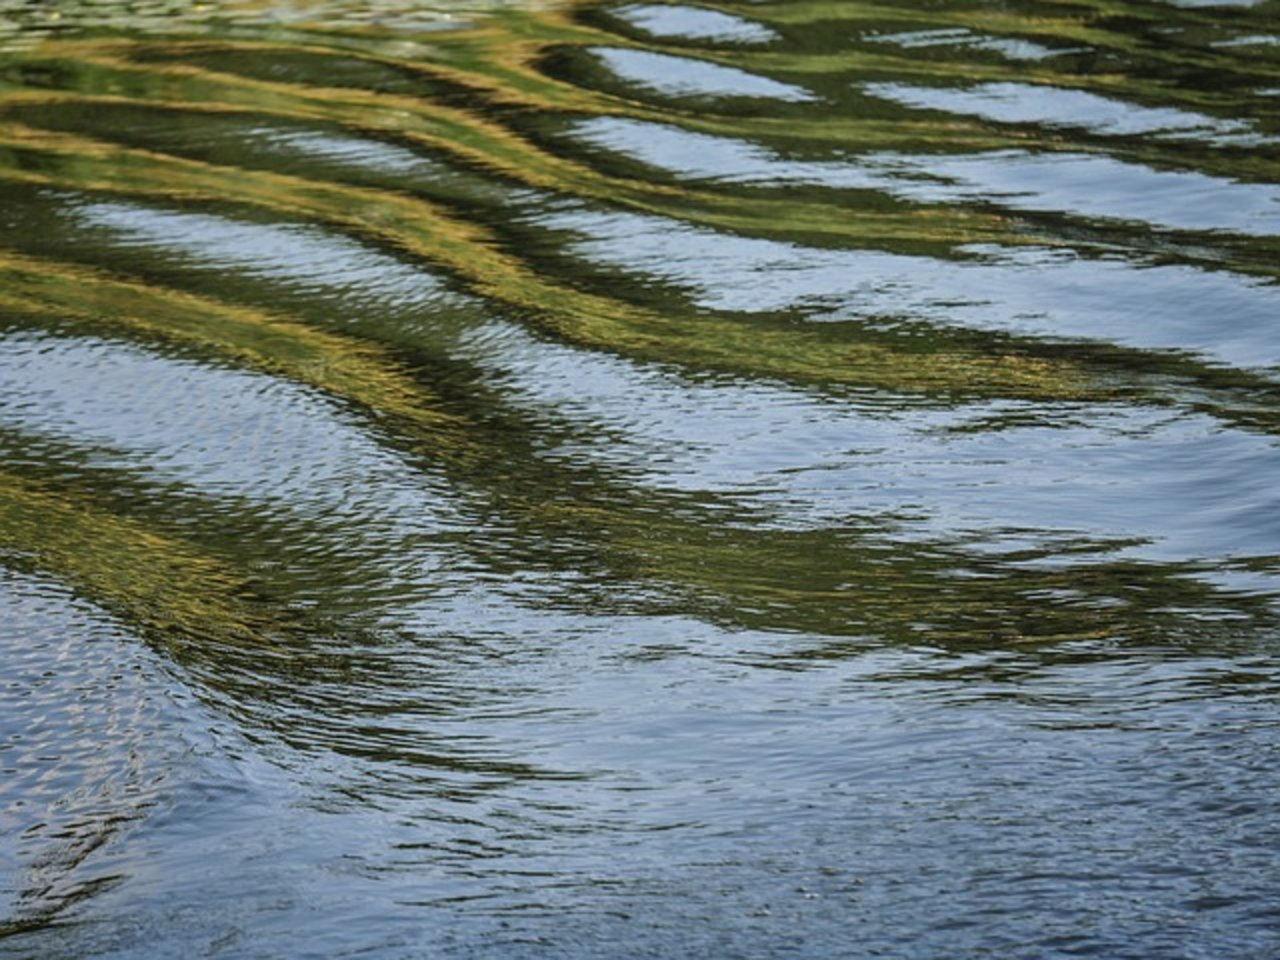 Die Anwendungsvorschriften für Pflanzenschutzmittel basieren auf anderen Grenzwerten, als bei Gewässerschutz verwendet werden. (Bild Pixabay)